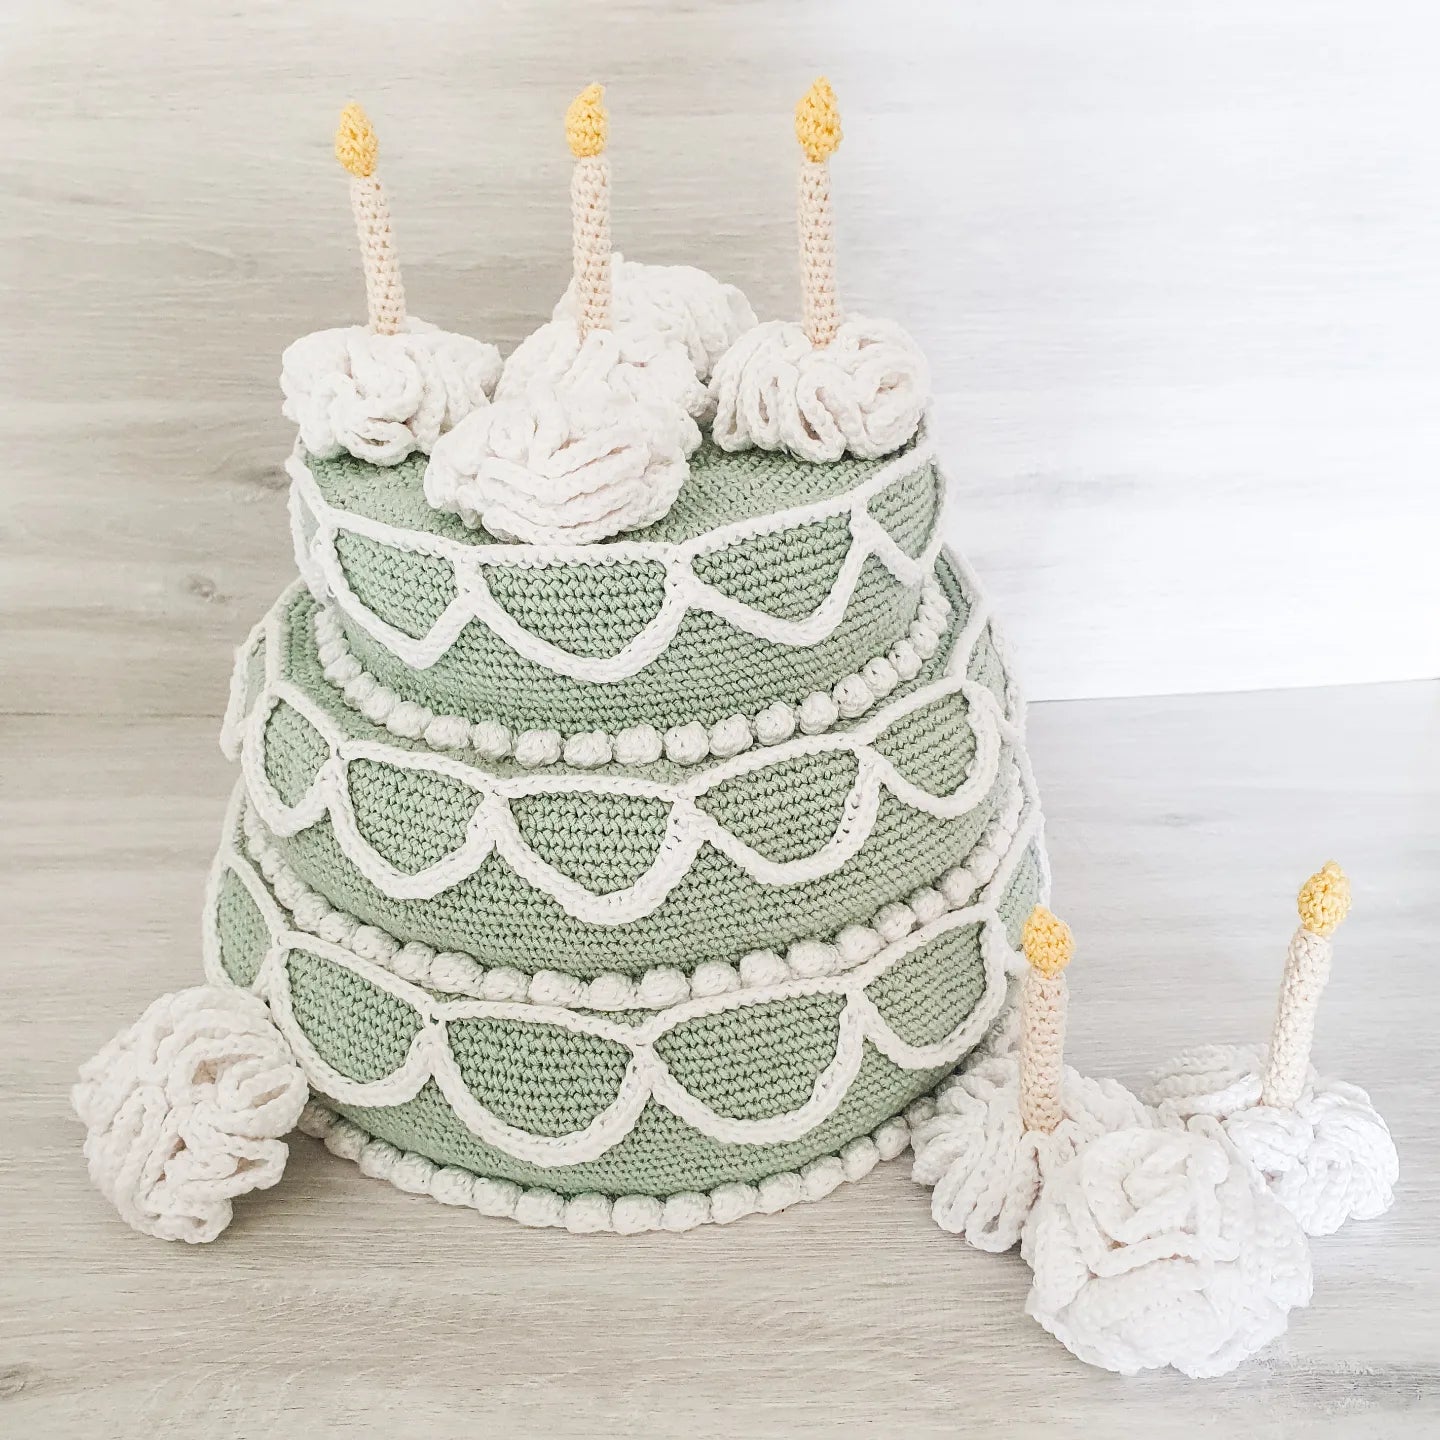 3 tier birthday cake